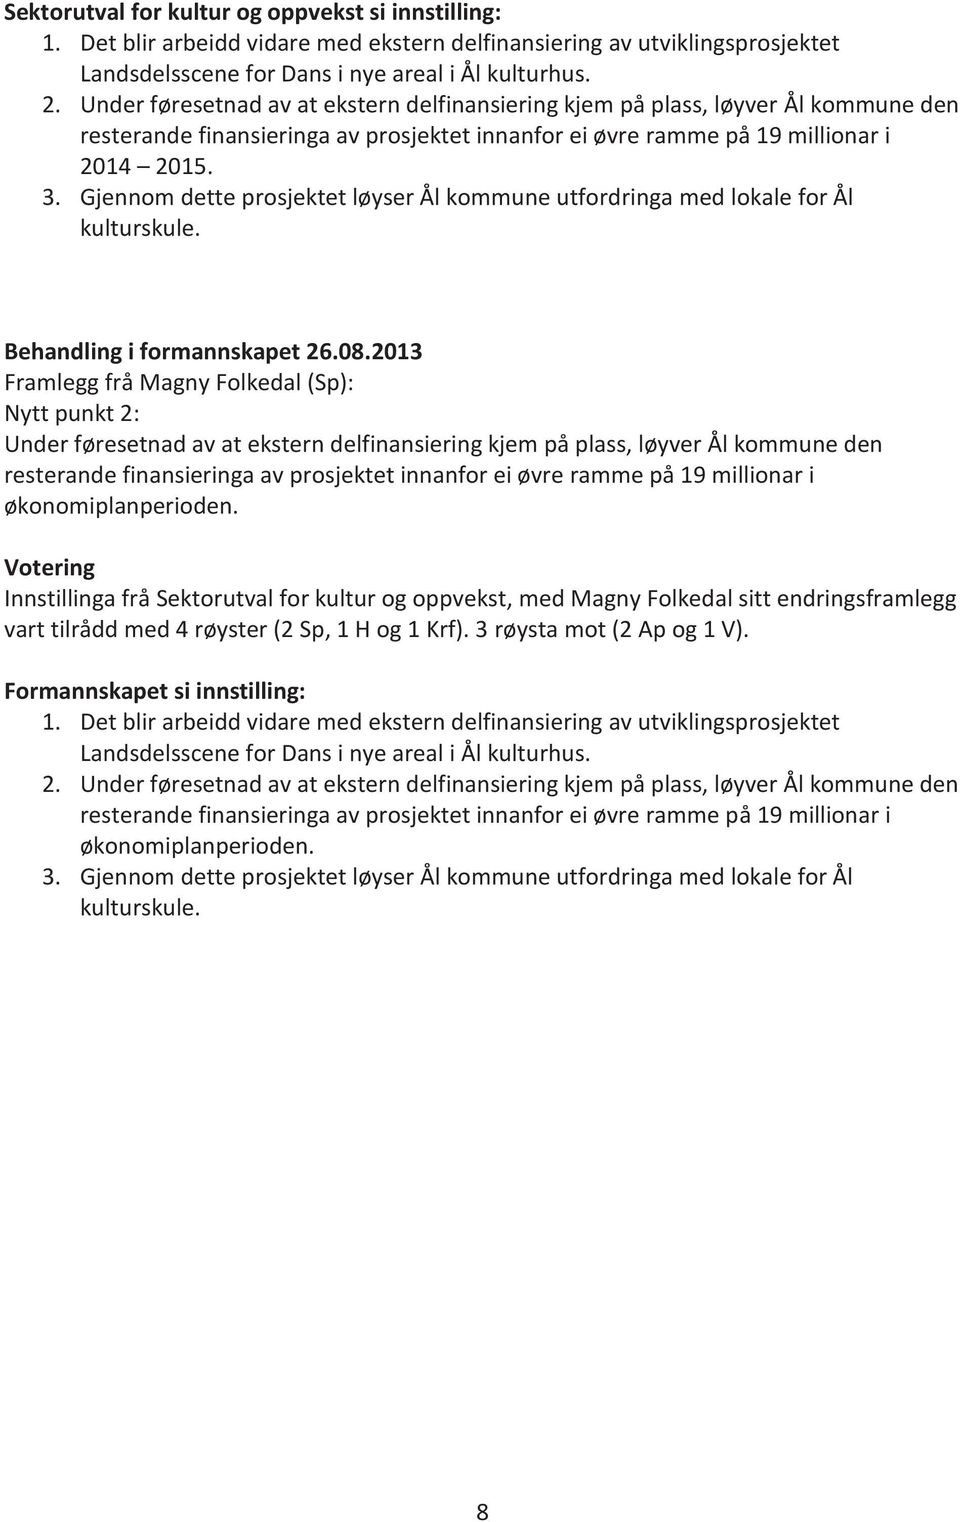 Gjennom dette prosjektet løyser Ål kommune utfordringa med lokale for Ål kulturskule. i formannskapet 26.08.